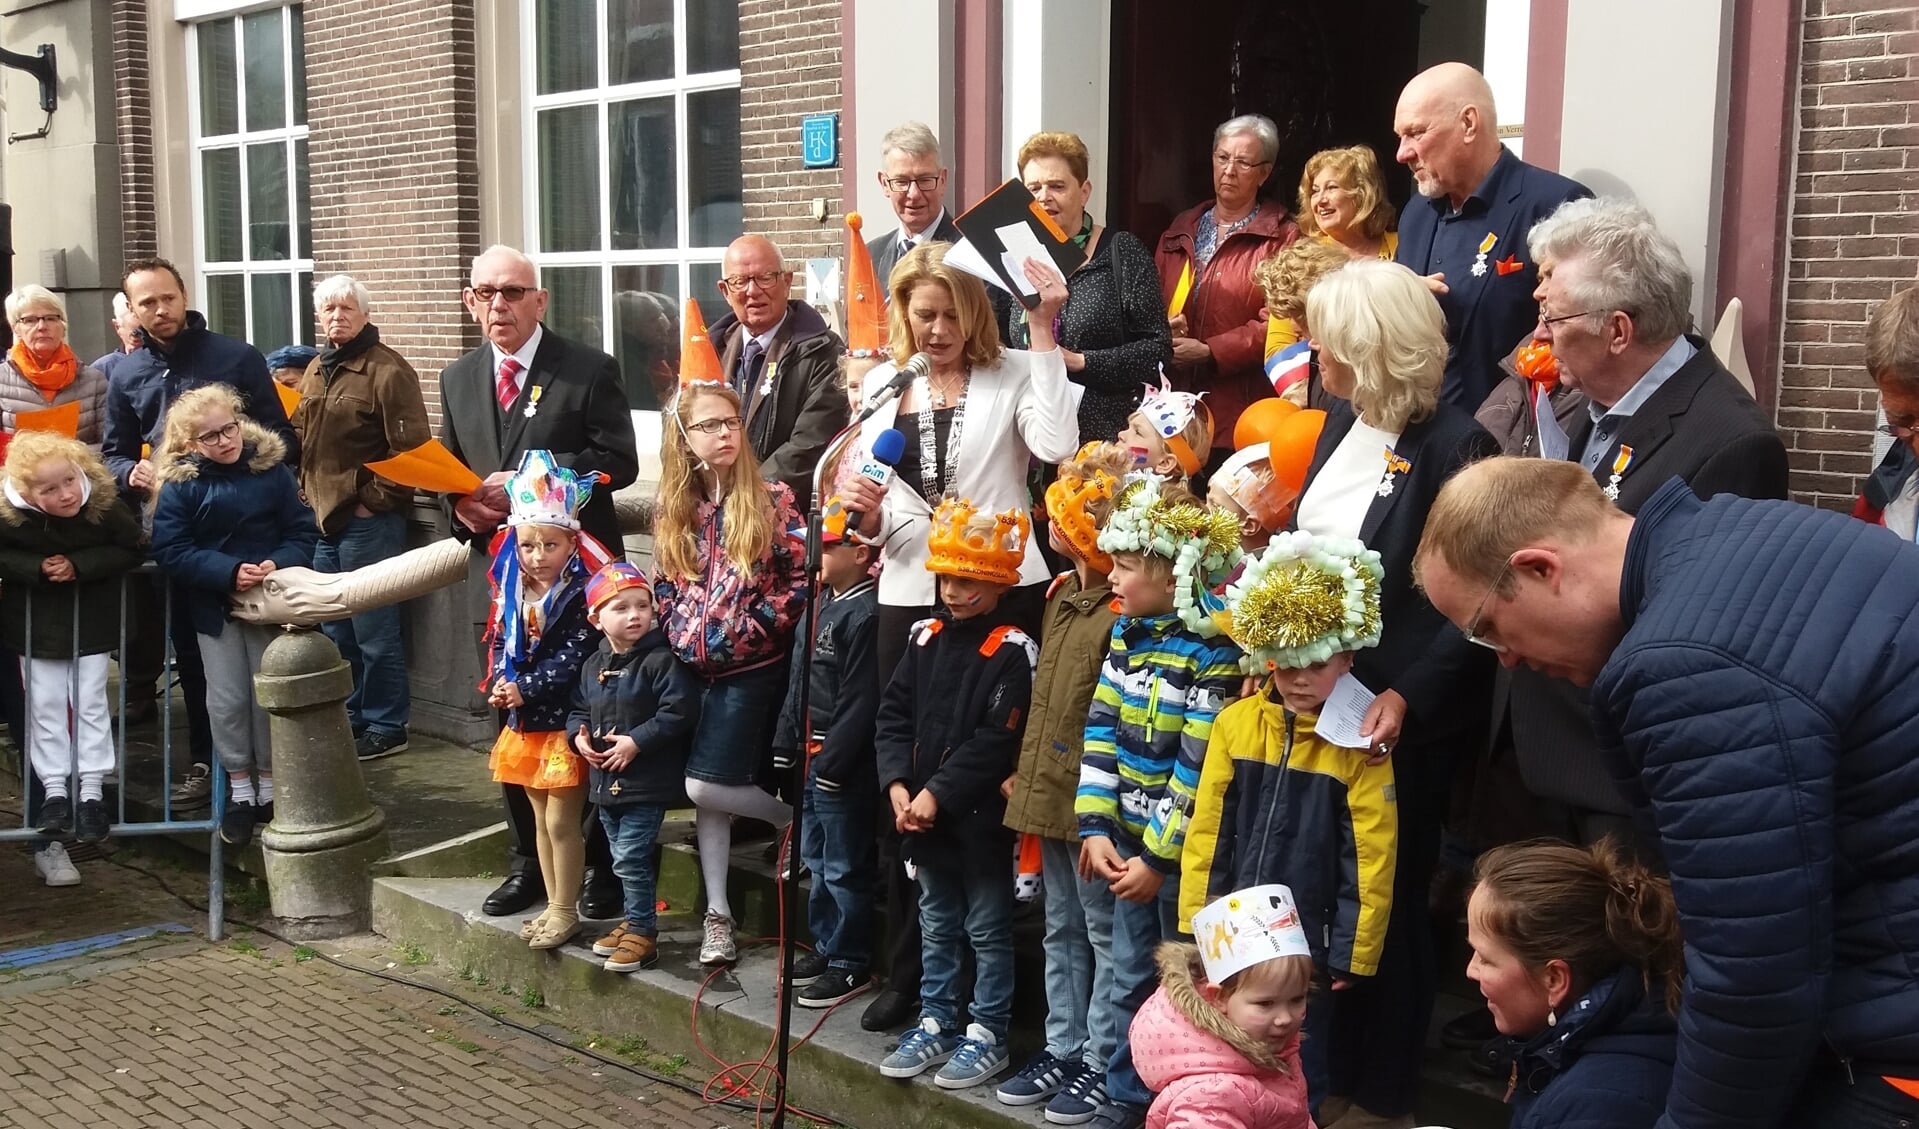 De jonge prijswinnaars zijn gefeliciteerd door burgemeester Kroon. 